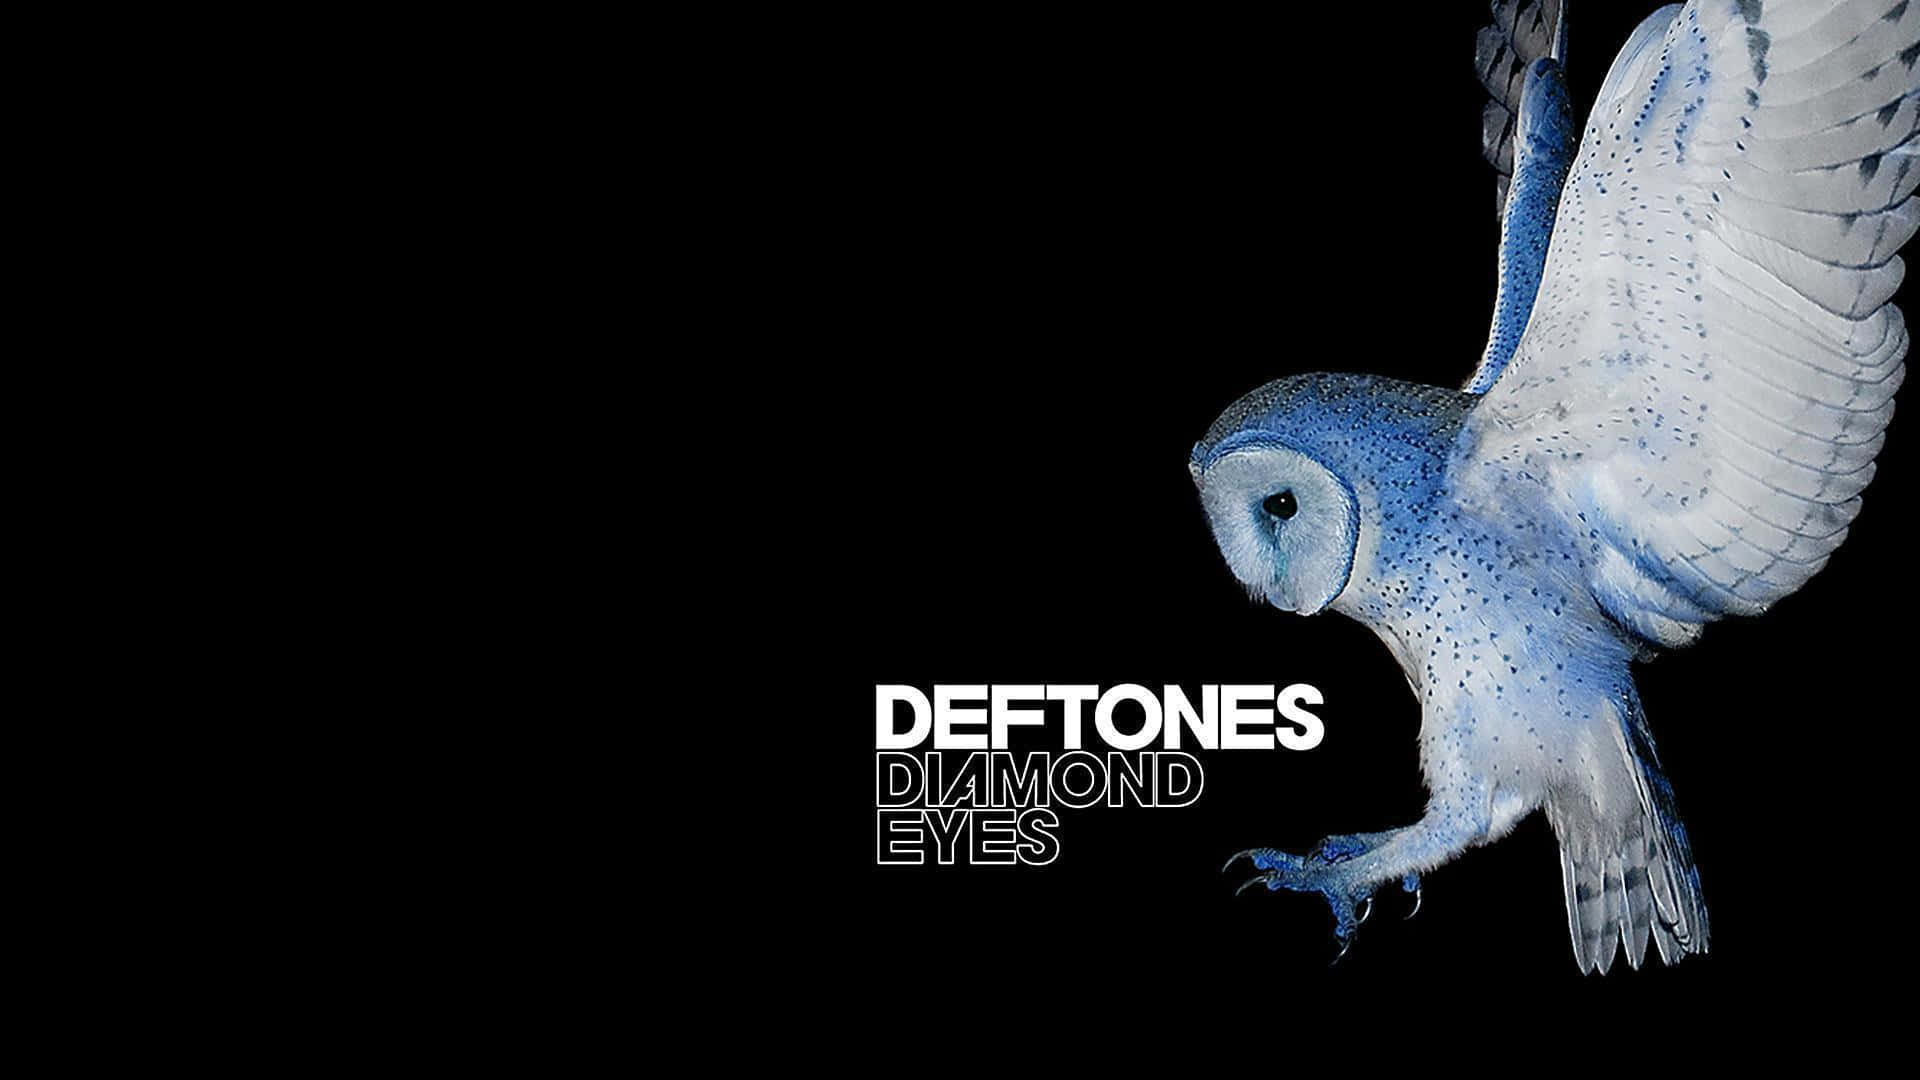 Deftones - Blue Eyes - Wallpaper Wallpaper